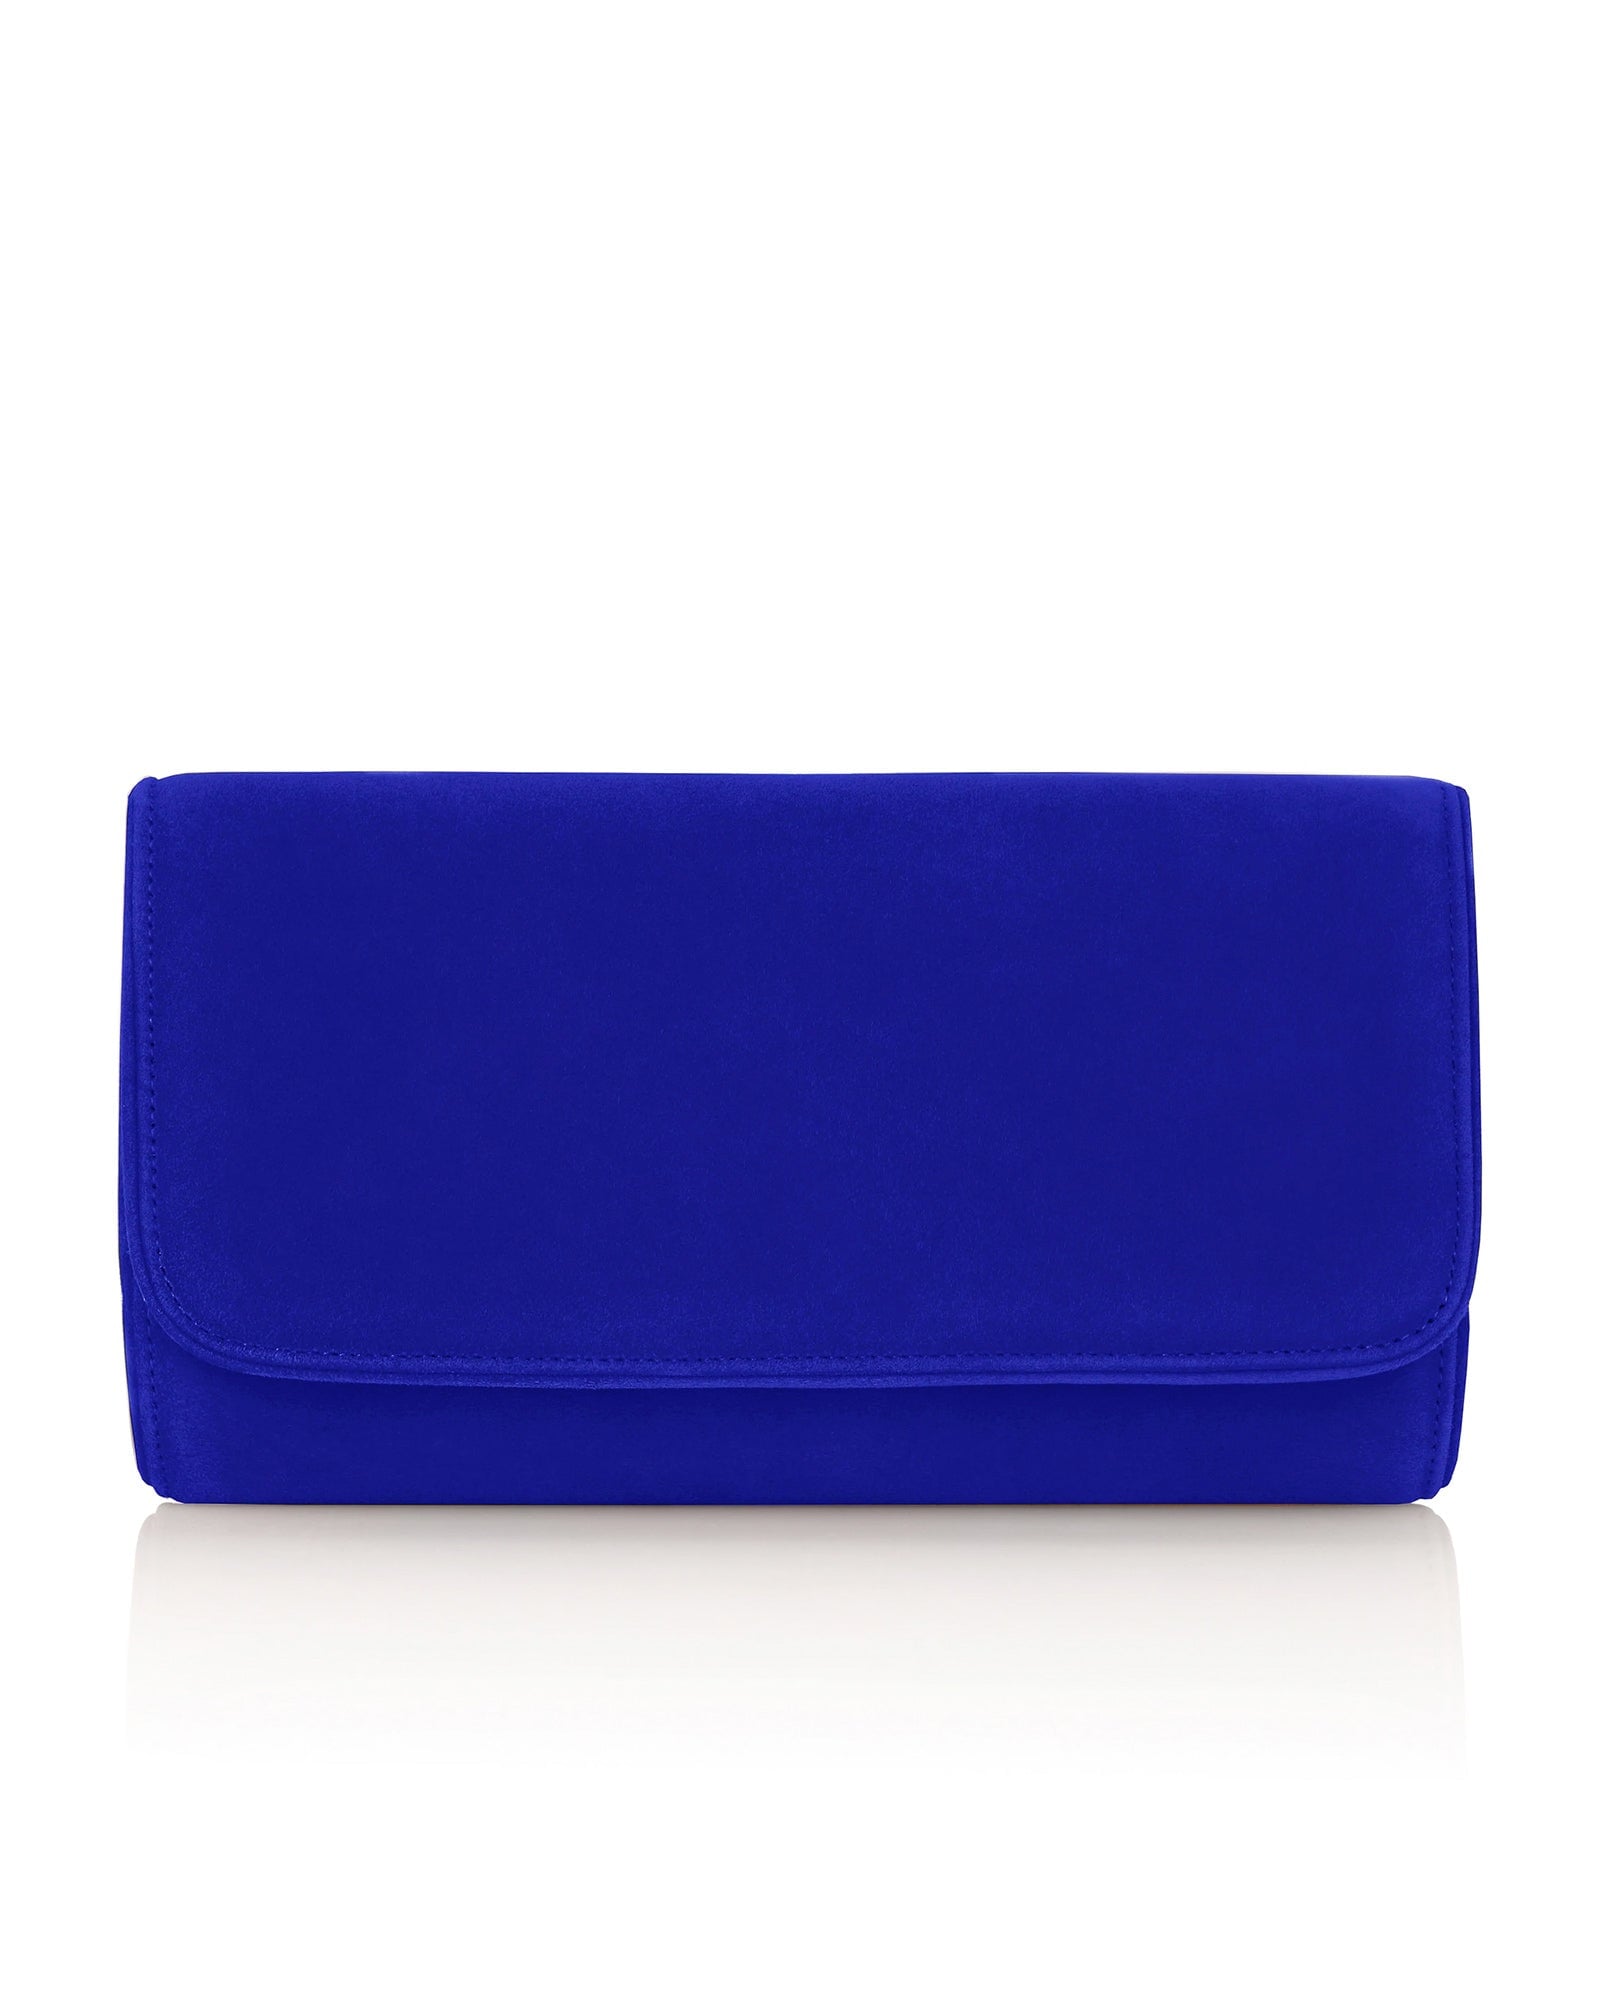 Natasha Cobalt Blue Occasion Bag MADE TO ORDER  image